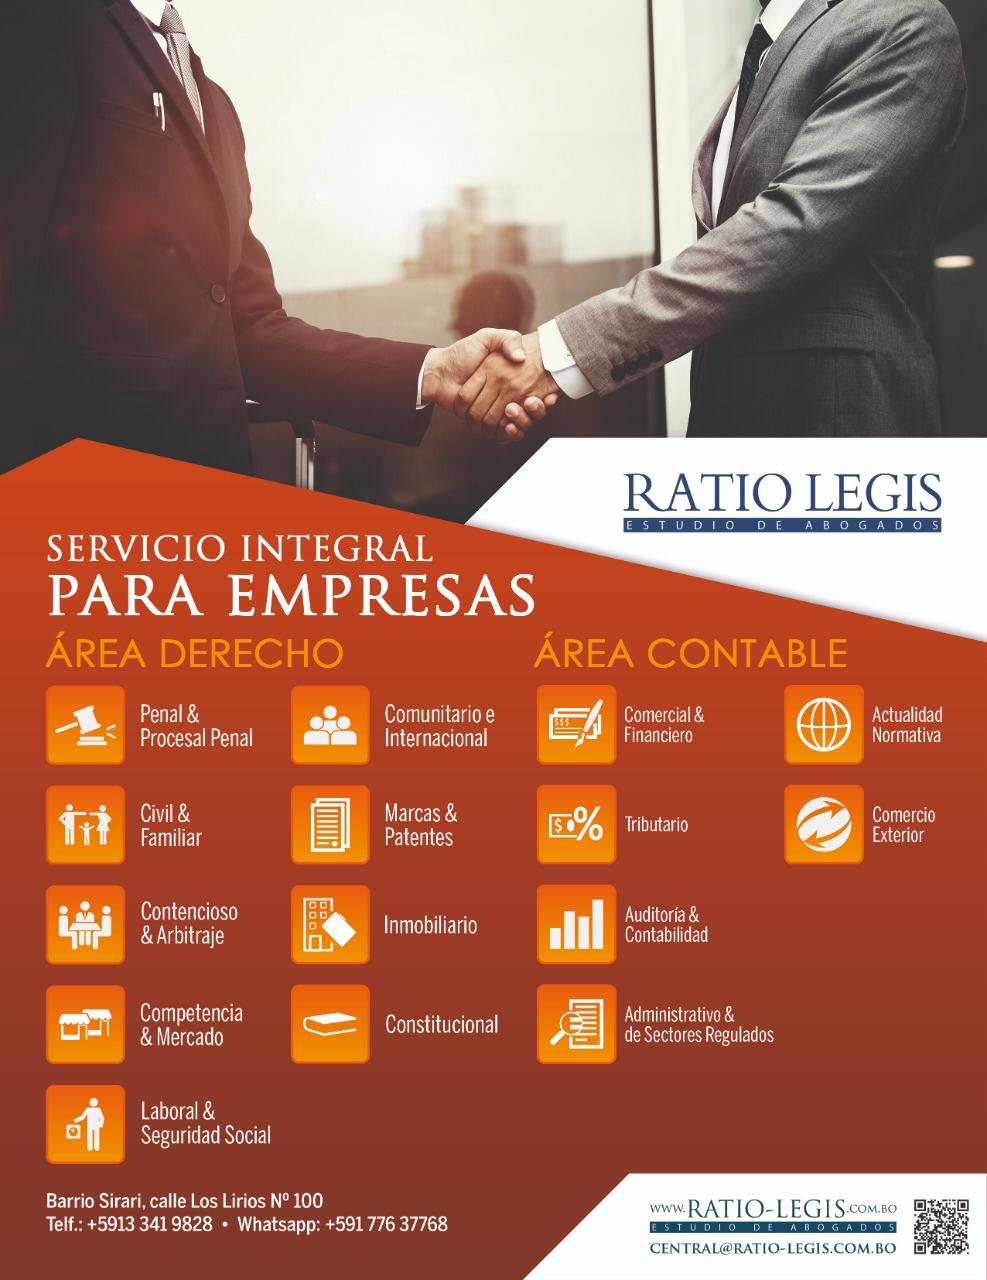 (Español) Servicio Integral para Empresas